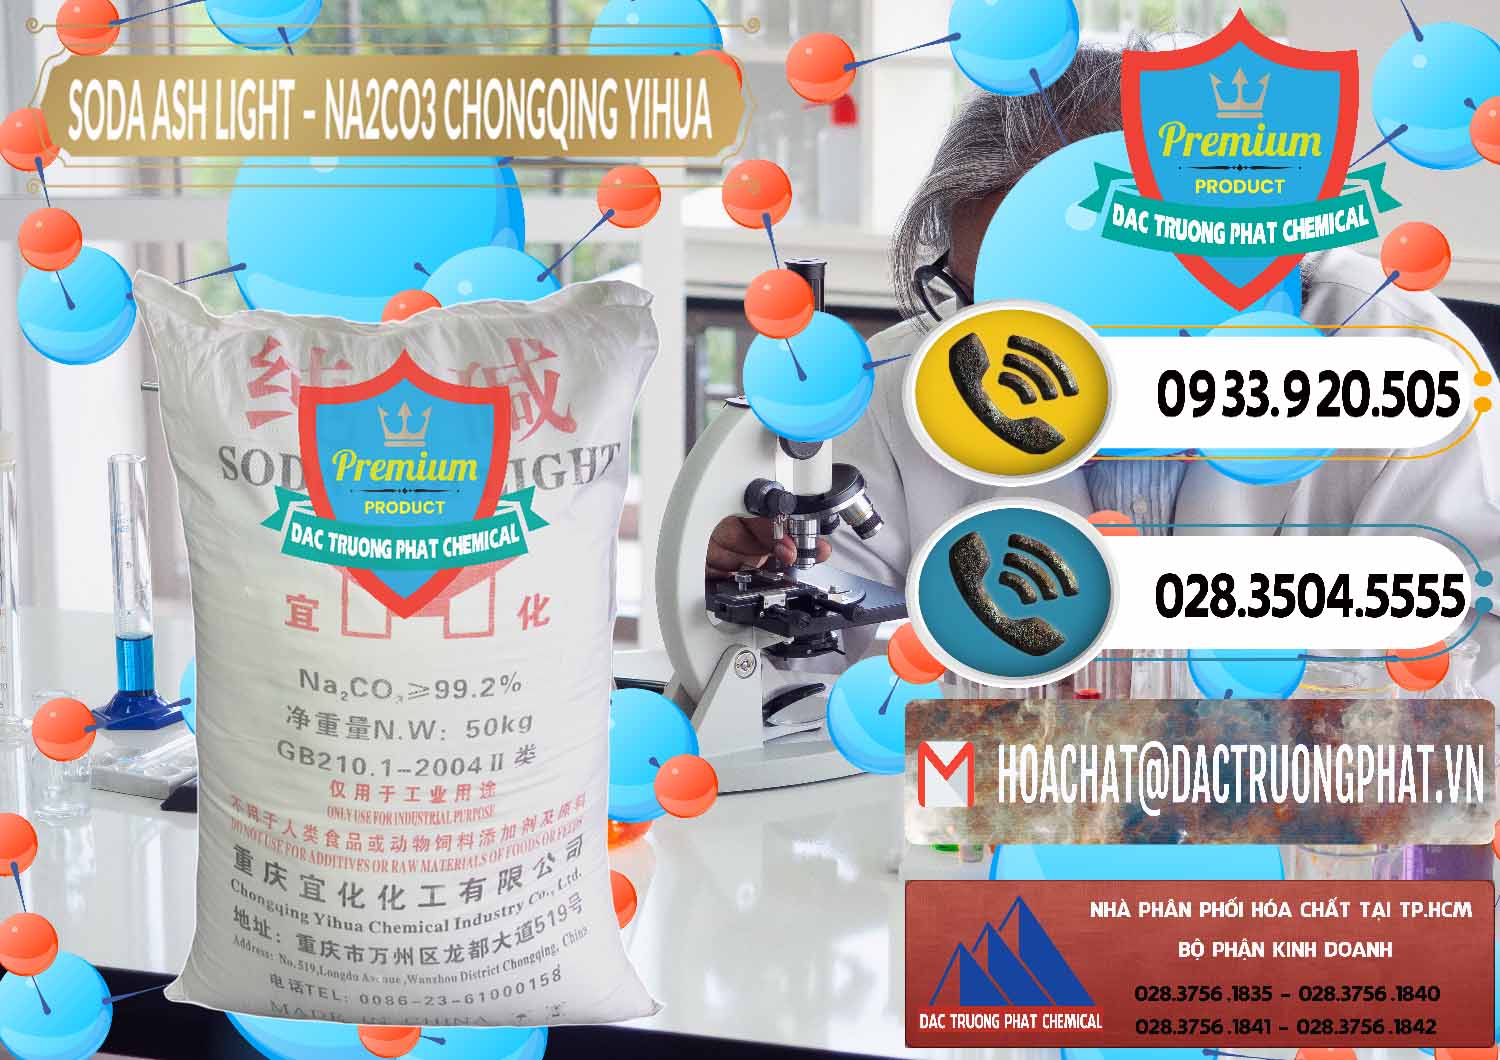 Đơn vị chuyên kinh doanh và bán Soda Ash Light - NA2CO3 Chongqing Yihua Trung Quốc China - 0129 - Nhà cung cấp _ phân phối hóa chất tại TP.HCM - hoachatdetnhuom.vn